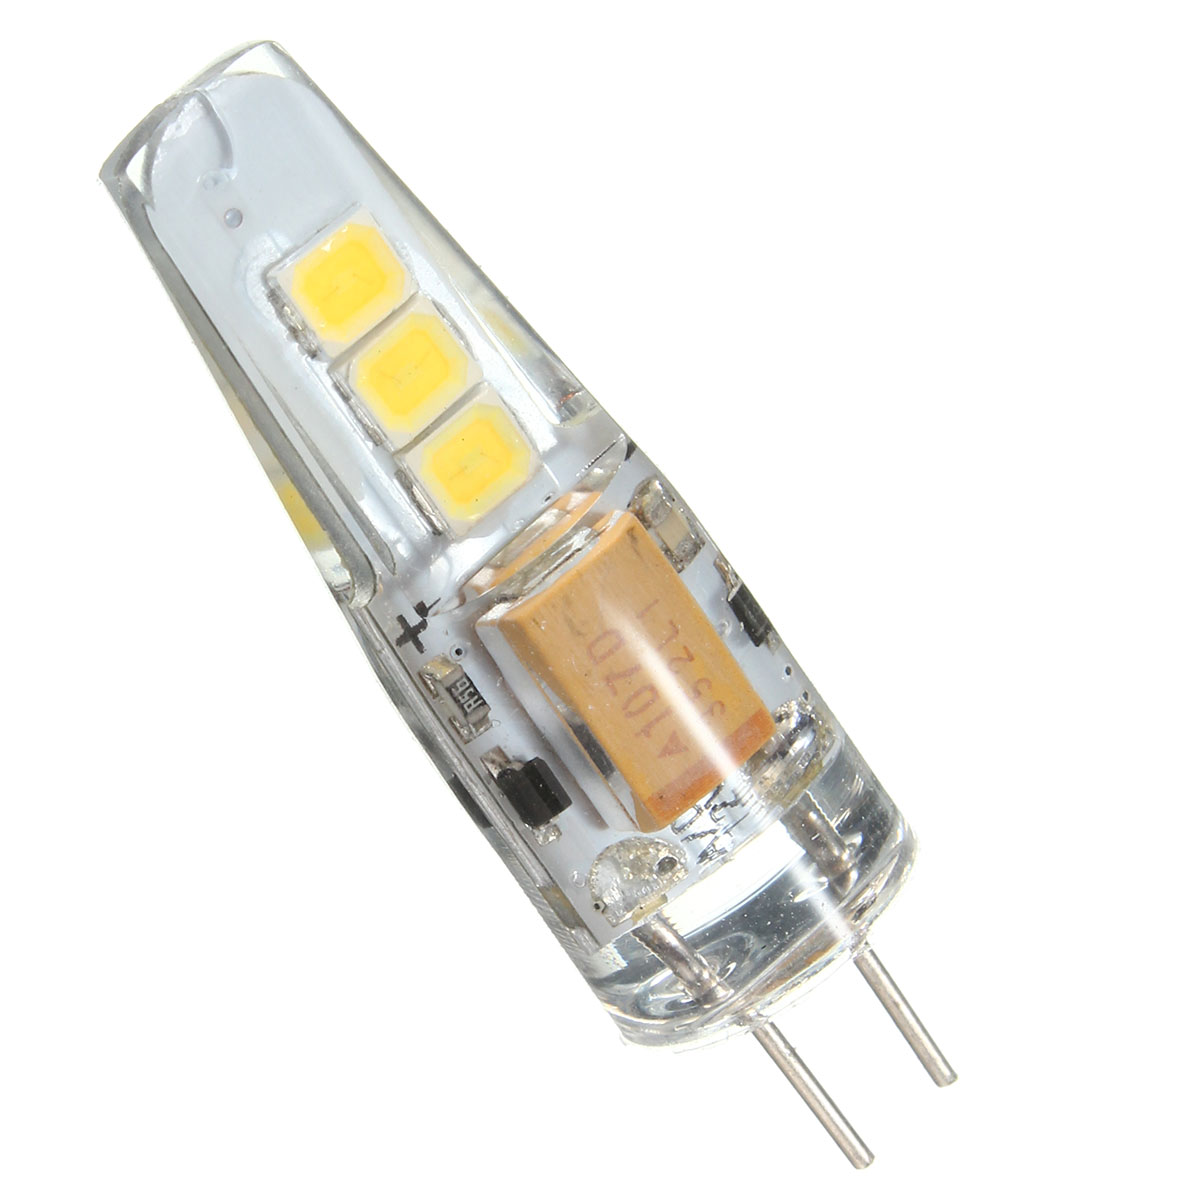 Купить лампочки светодиодные g4. Лампа led g4 2w 12v 6500k. Лампа 6 v g4 led. Светодиодные лампы 12v g4 RGB. Лампа 12v g4 3w 4500k.